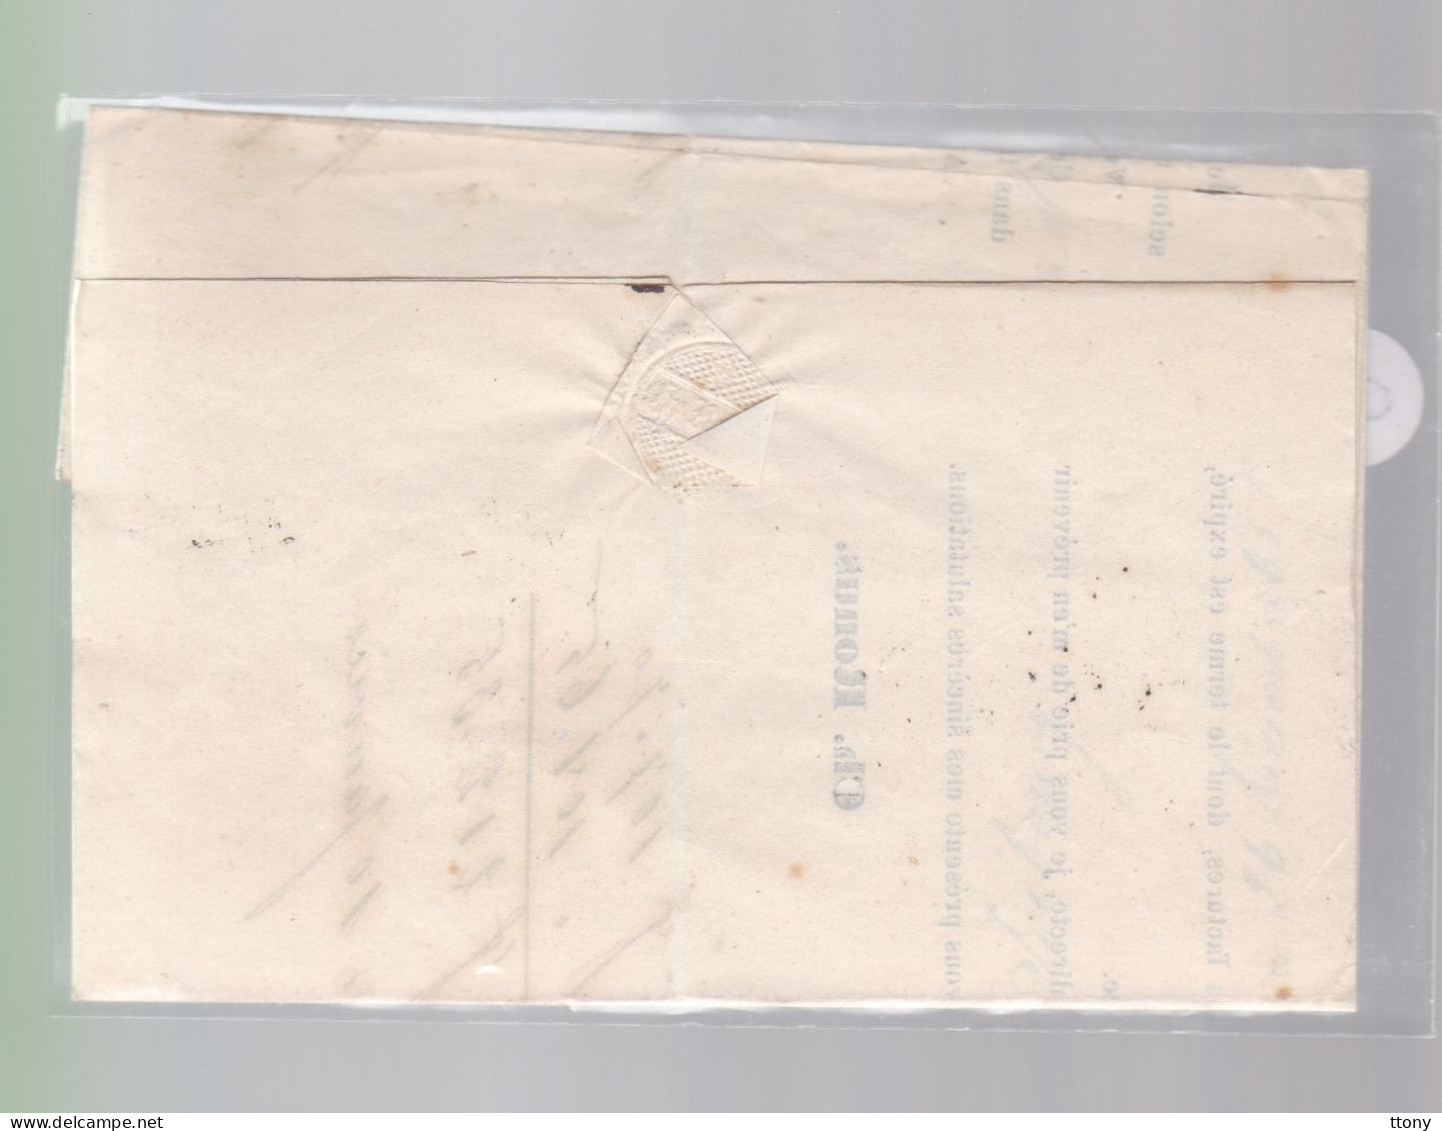 Un Timbre N° 31  10 C  Franco  Suisse  Sur Lettre  Cachet   Basel    Facture   1865   Destination Fribourg - Covers & Documents